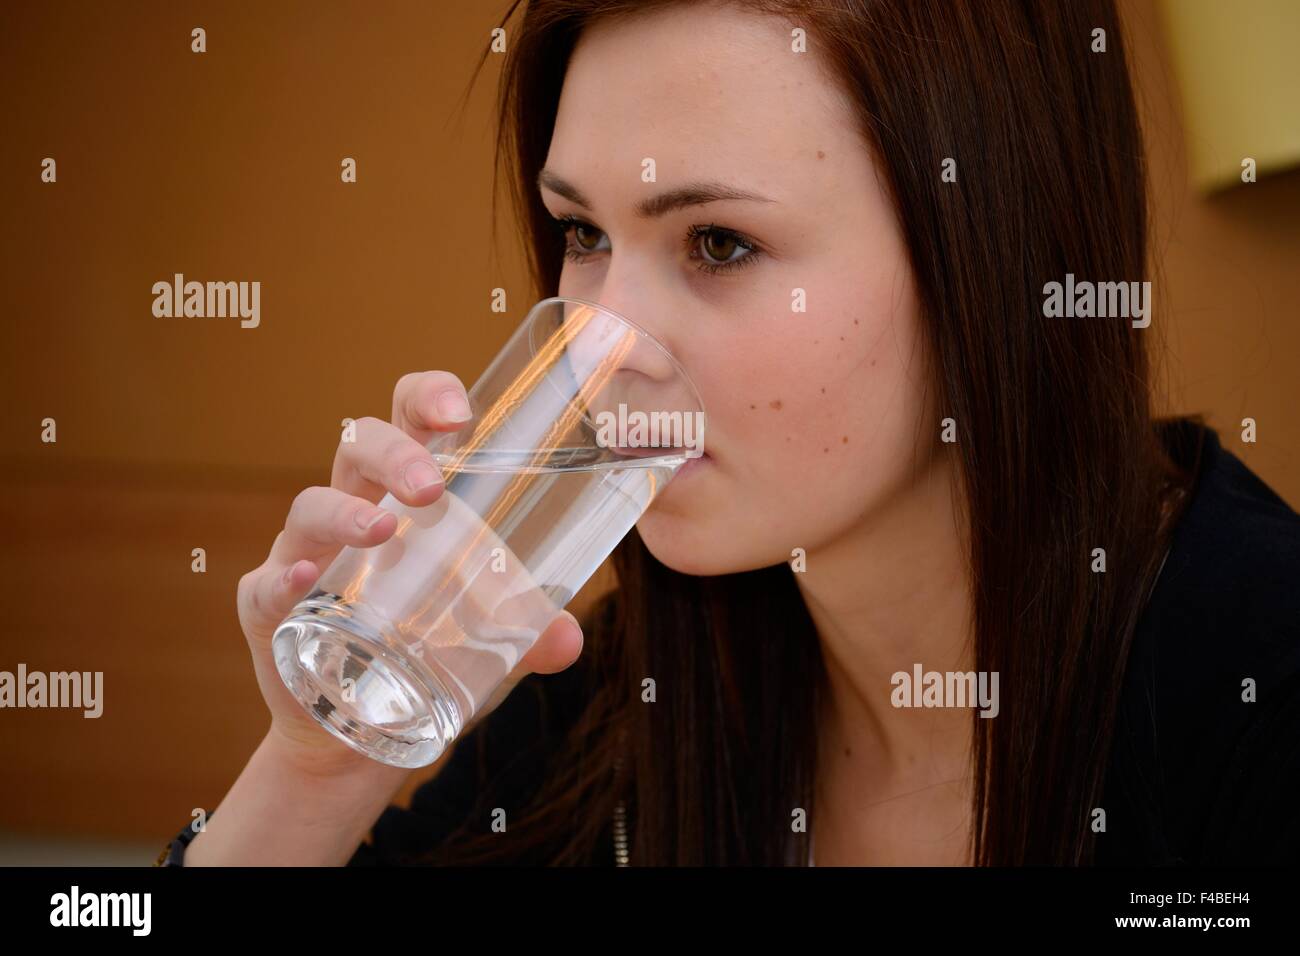 Adolescente vaso de agua potable Foto de stock